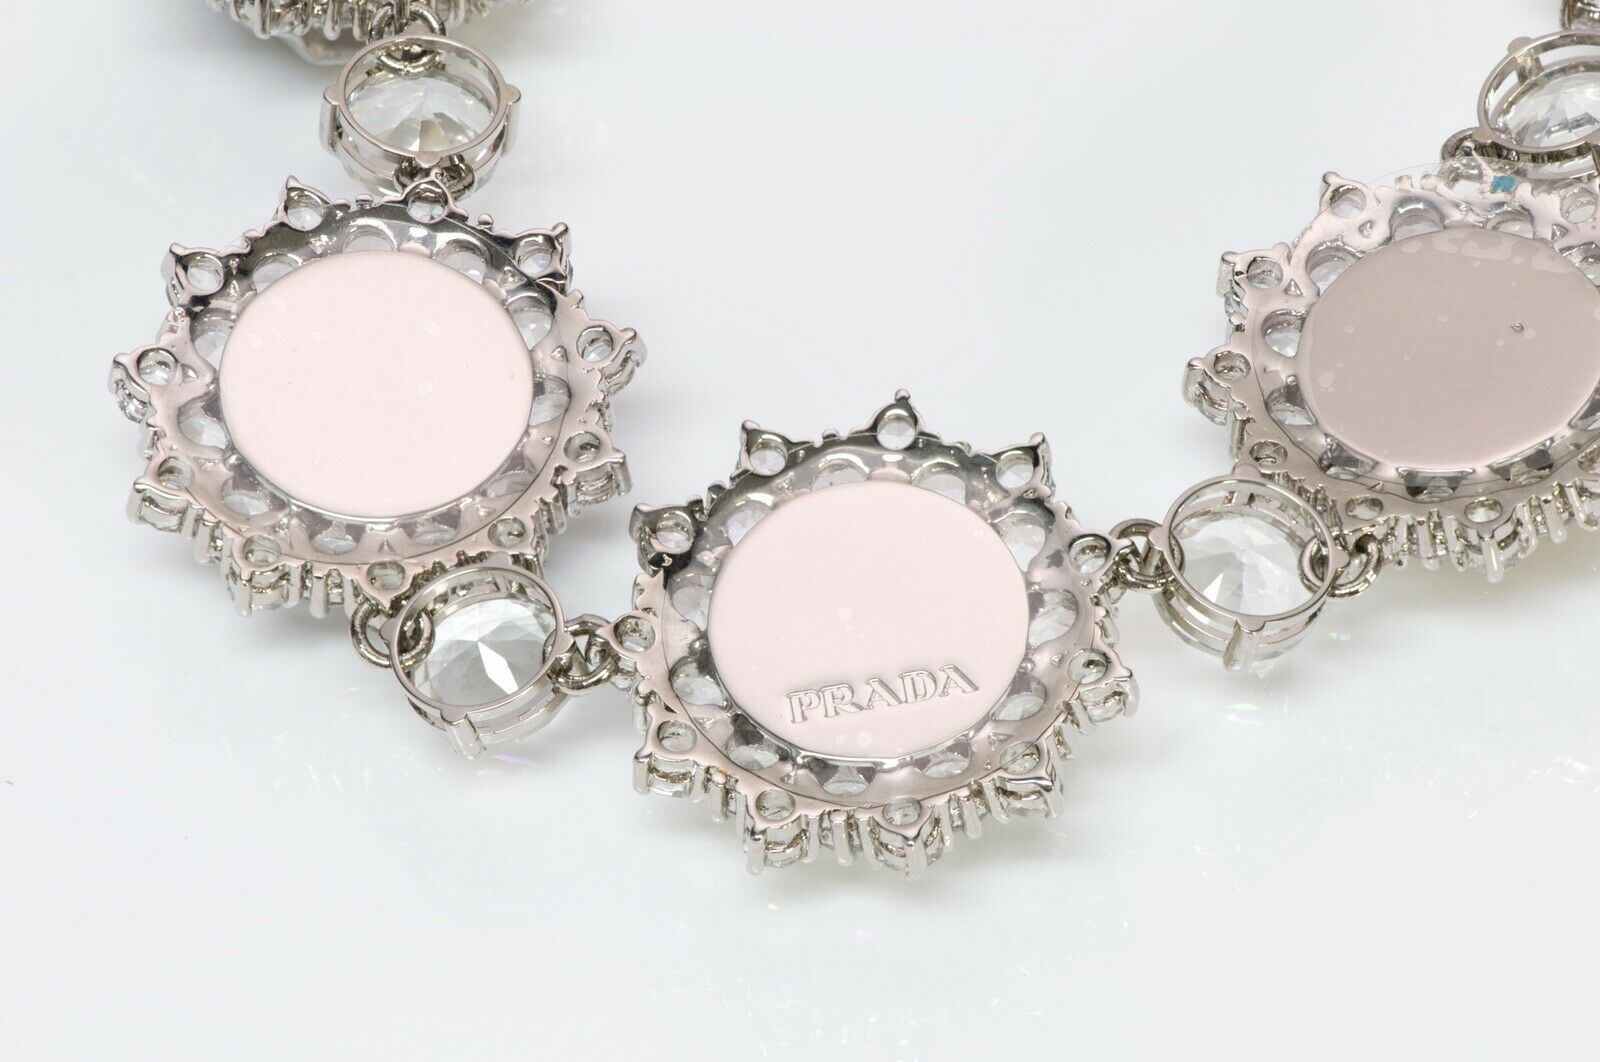 PRADA Spring 2012 White Enamel Crystal Rose Collar Necklace